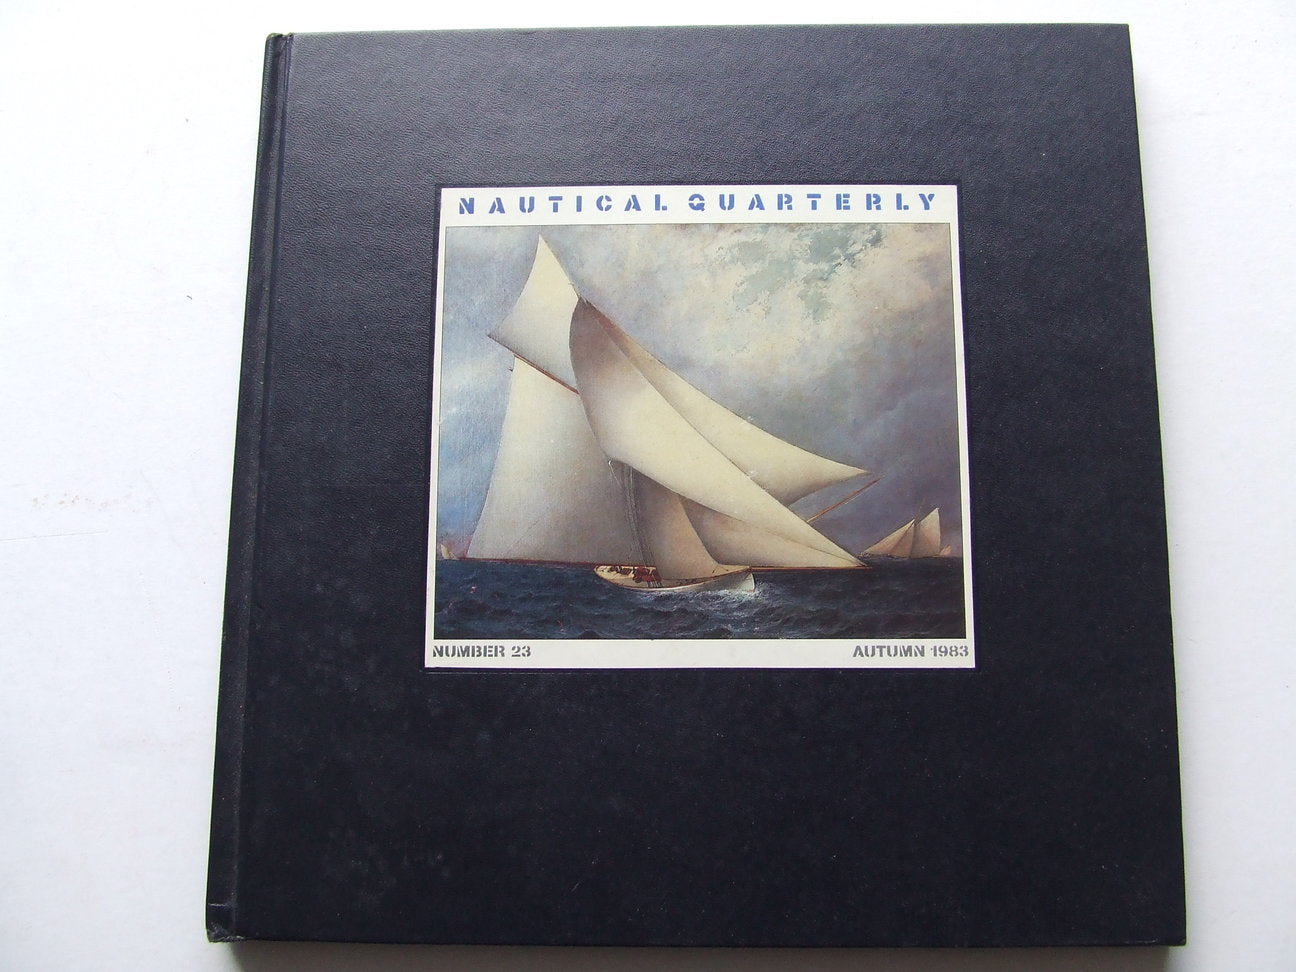 Nautical Quarterly. number 23, Autumn 1983